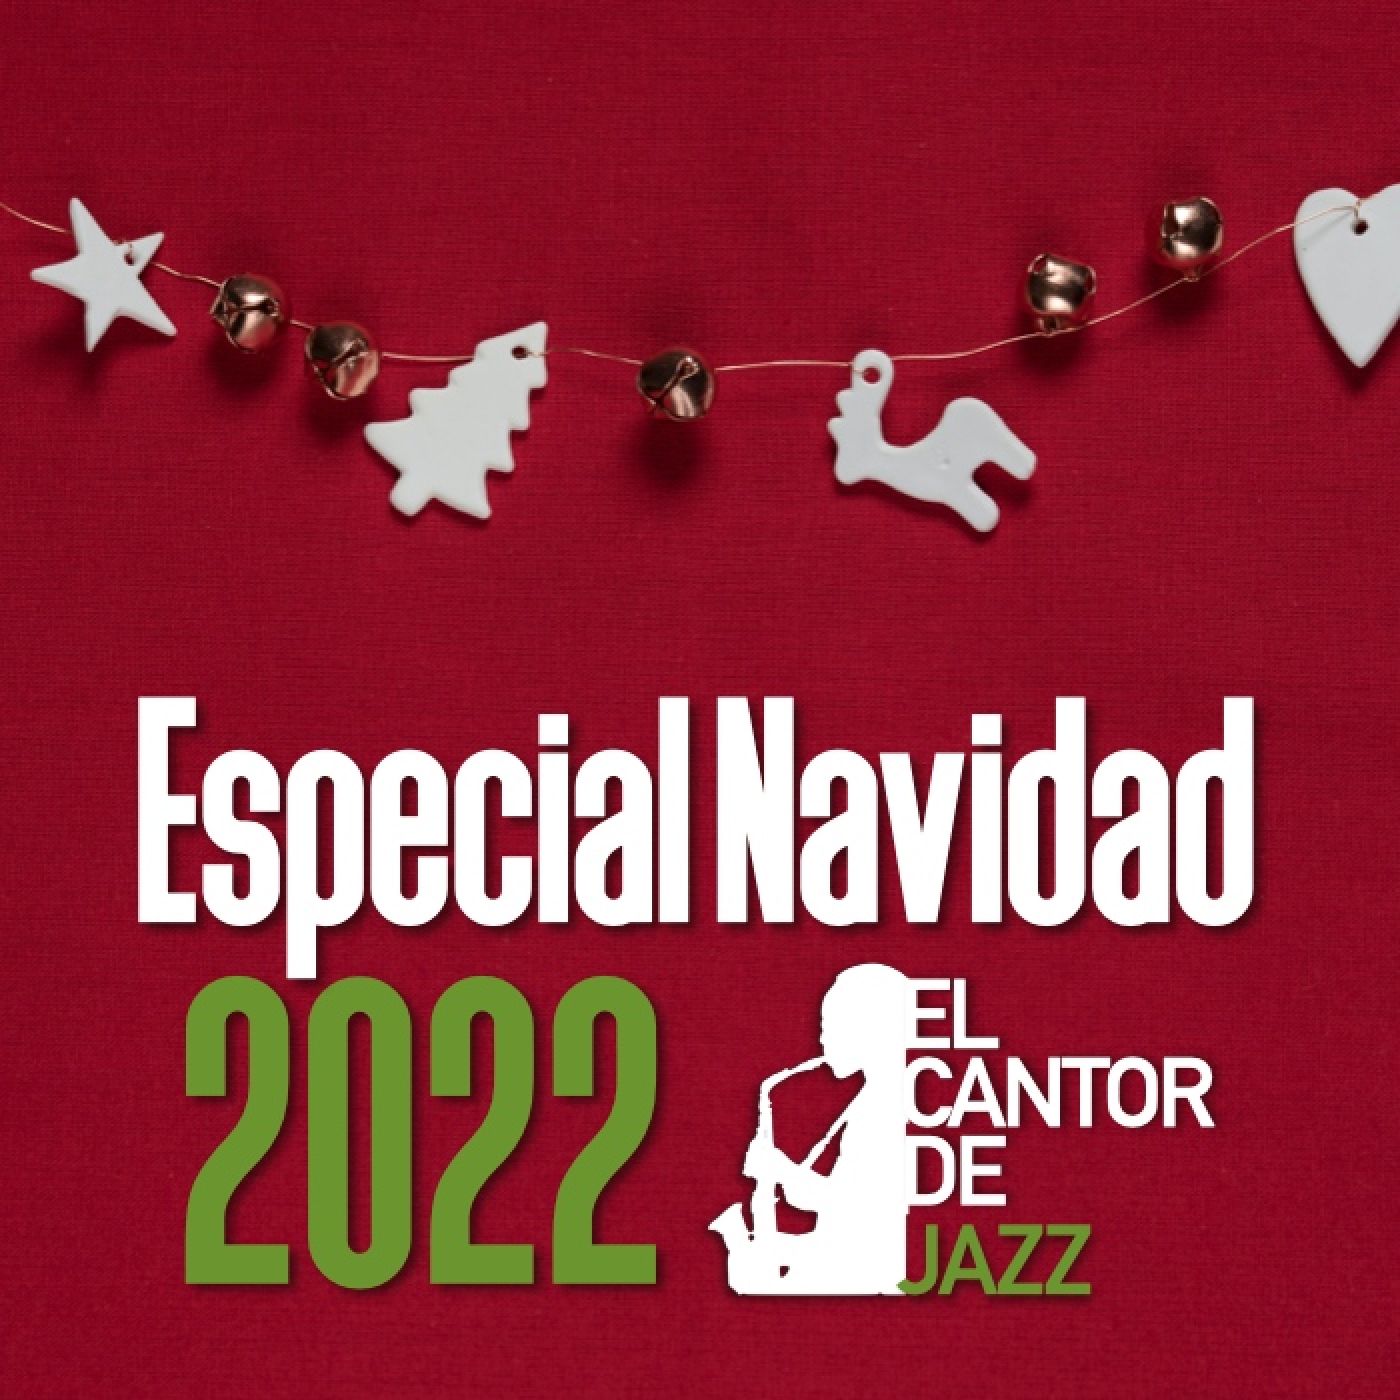 El Cantor de Jazz 2022×07: Especial Navidad 2022